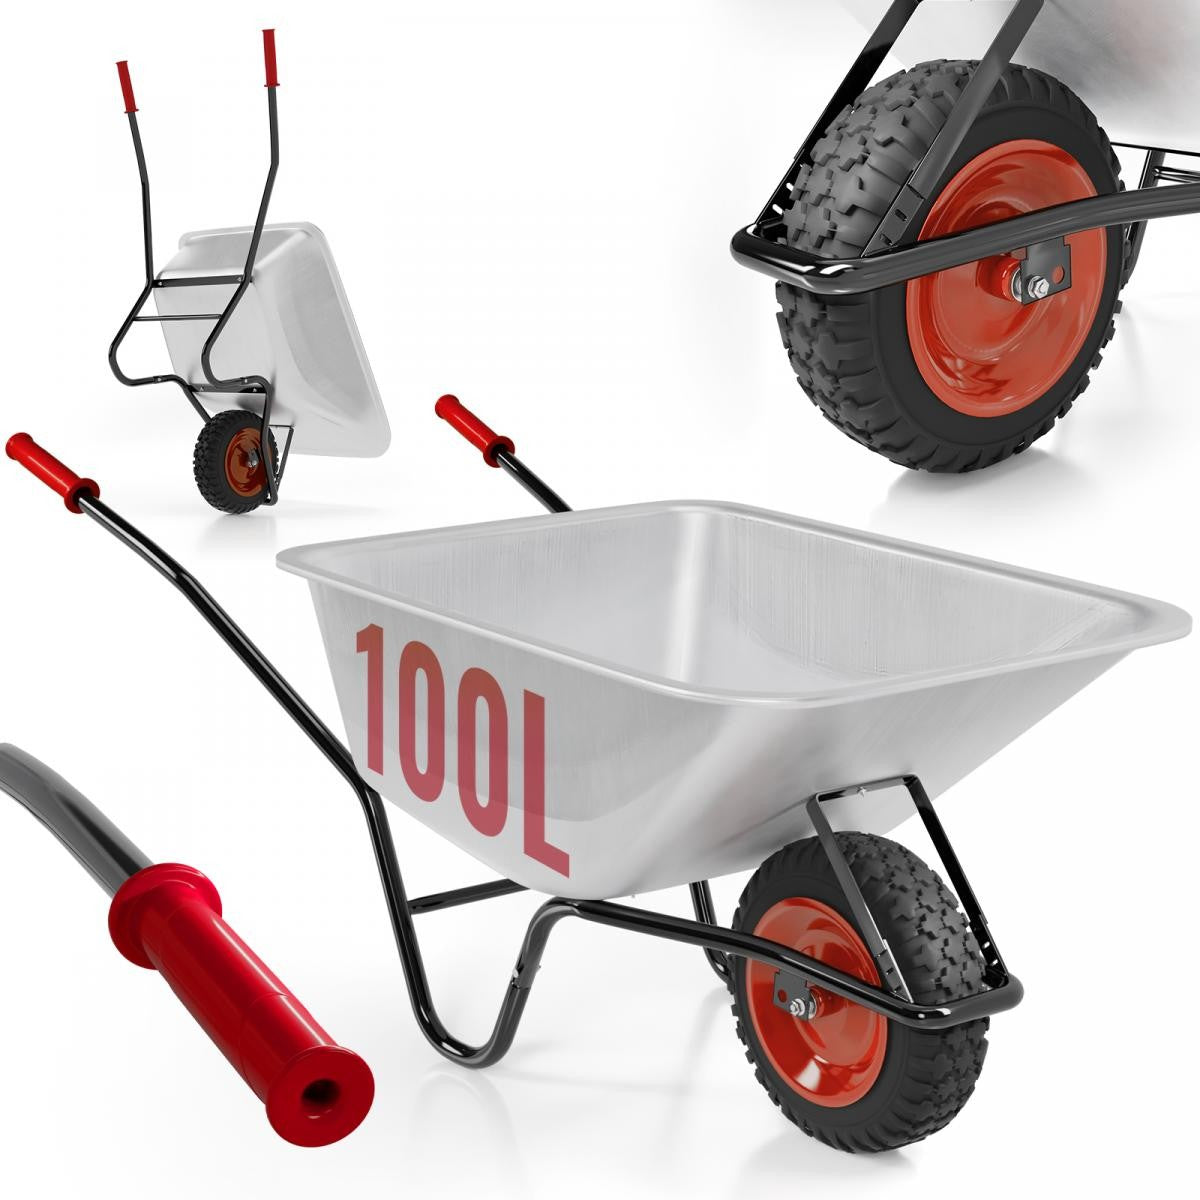 #3 - Trillebør - Galvaniseret, med pneumatiske dæk, tipfunktion, 100 liter, 210 kg, rød